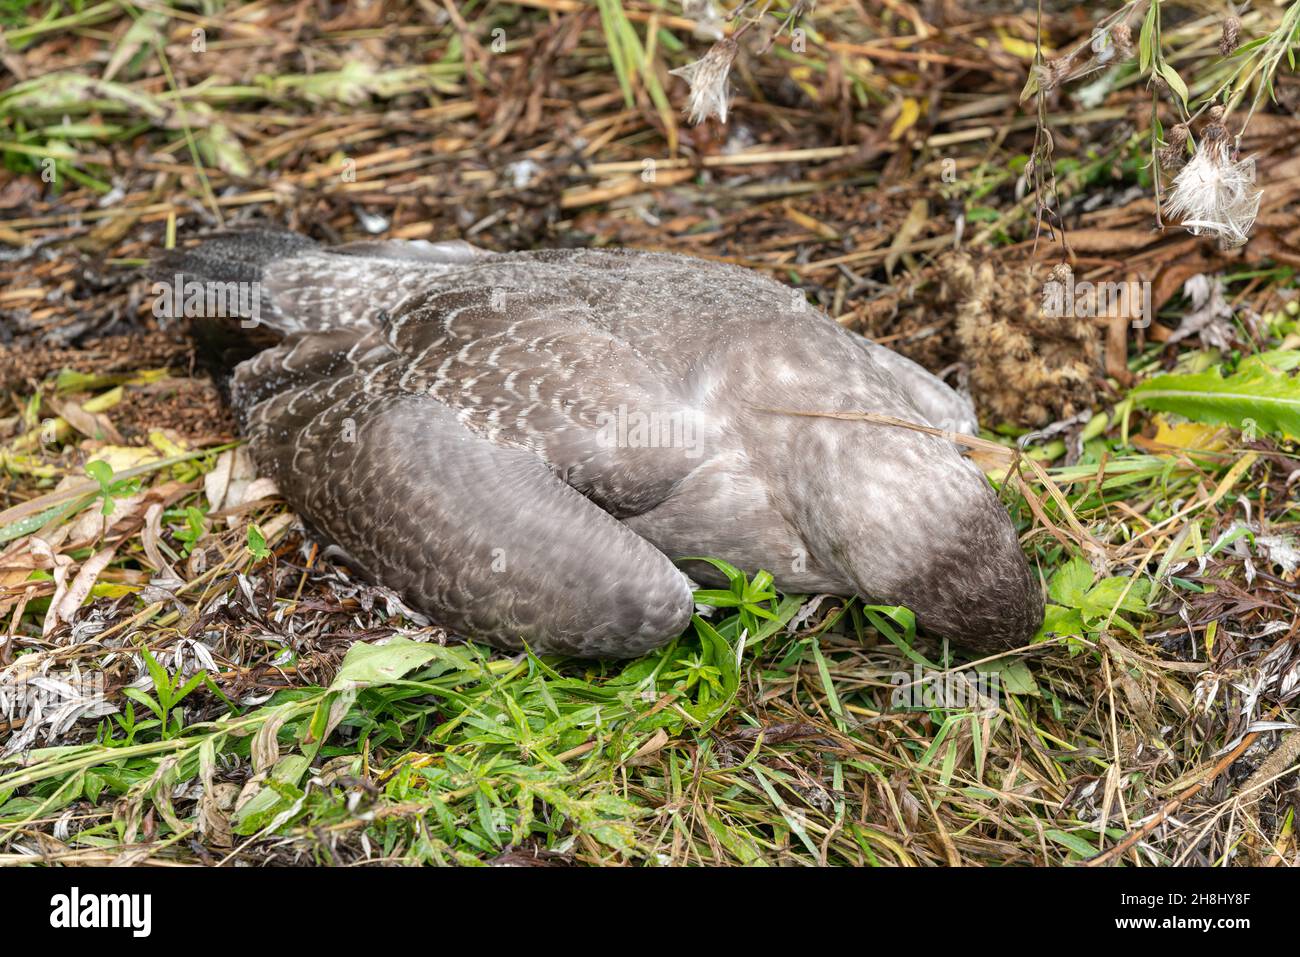 La carcasse du jeune oiseau de mouette tué est couchée parmi l'herbe.Conservation de l'environnement, concept de protection des animaux sauvages. Banque D'Images